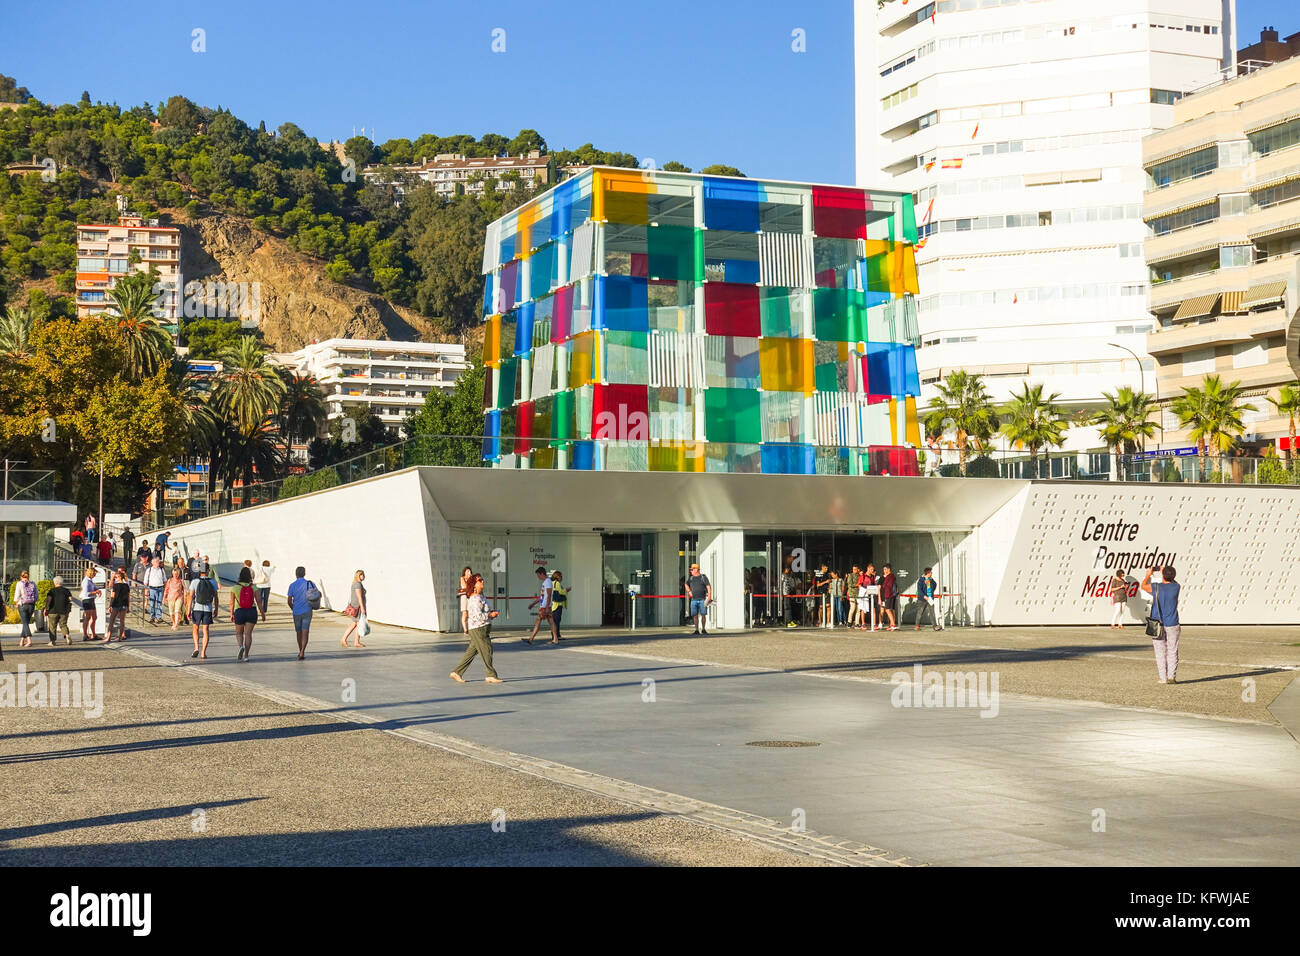 Malaga Centre Pompidou, le Centre Pompidou, le cube, Pop up, musée à Muelle uno, port de Malaga, Andalousie, espagne. Banque D'Images